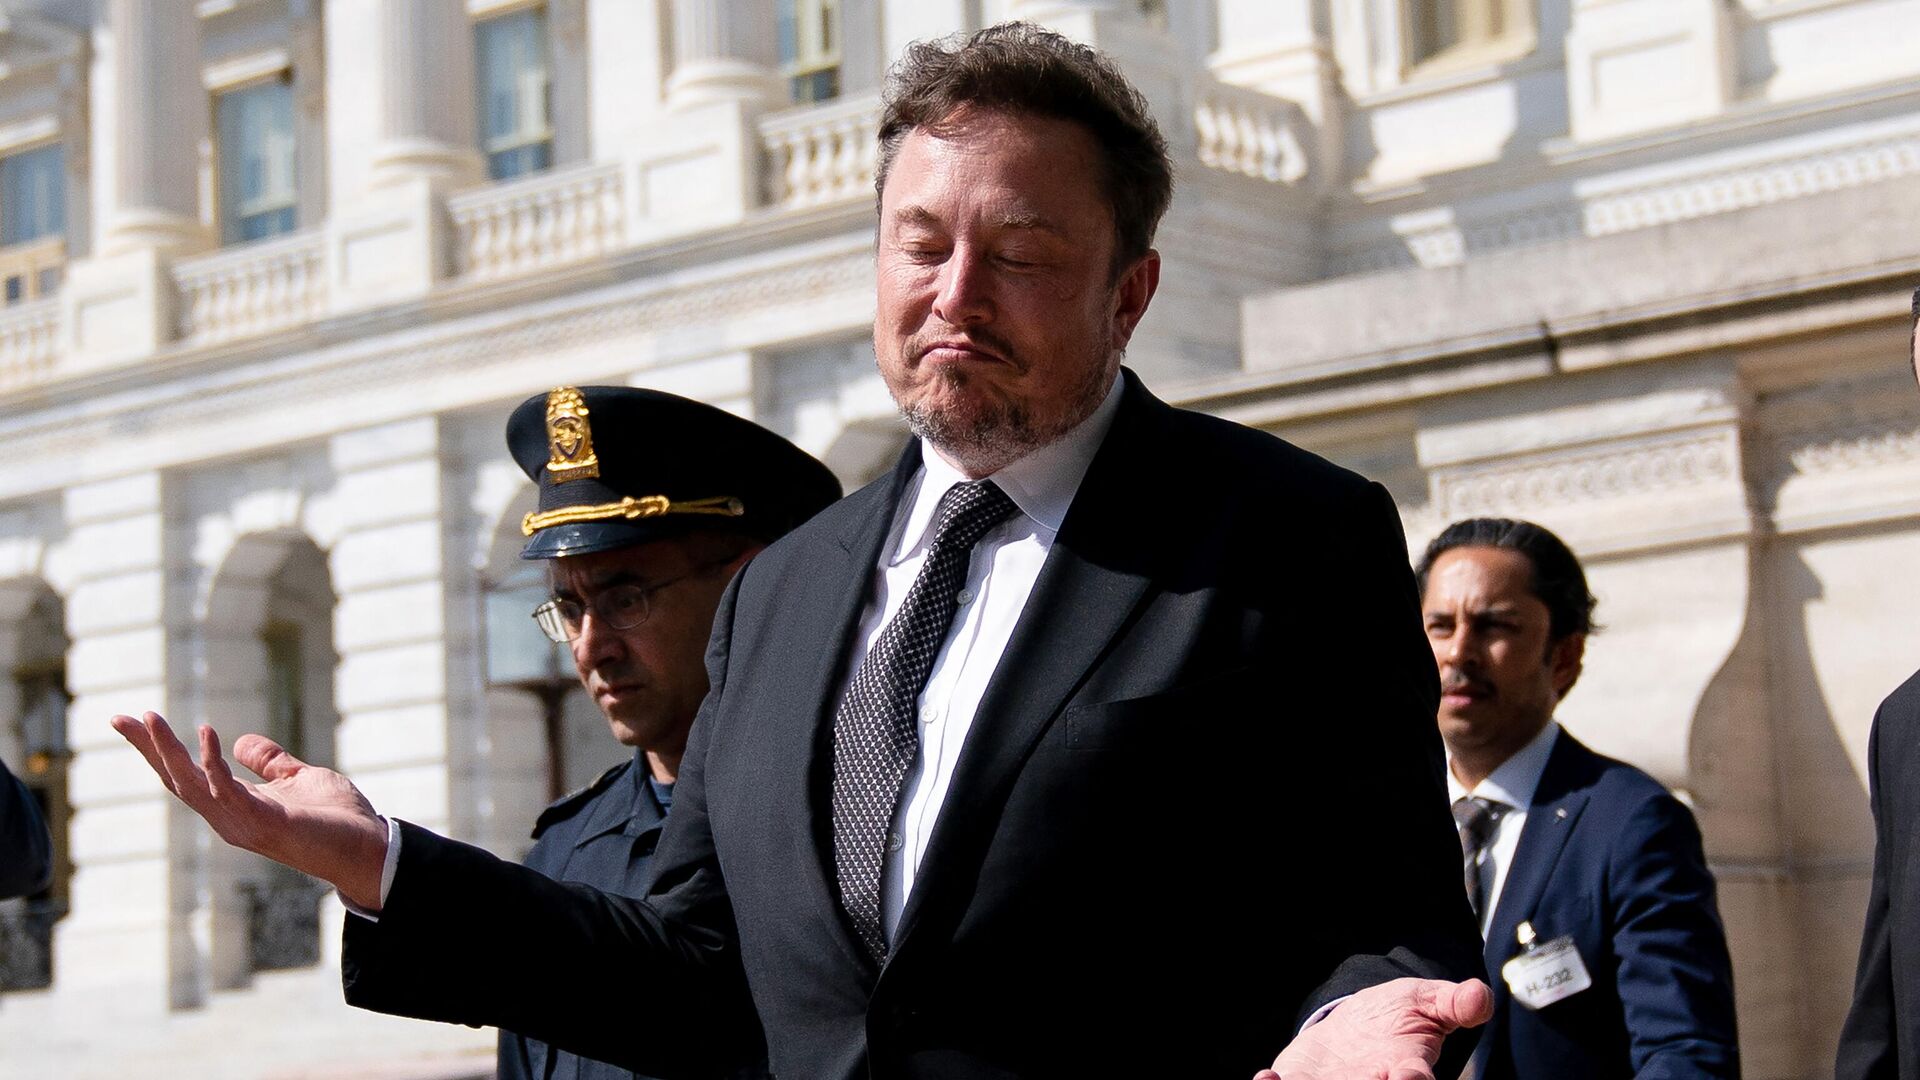 Tesla'da yönetim krizi: Hissedarlar Elon Musk'a karşı cephe aldı